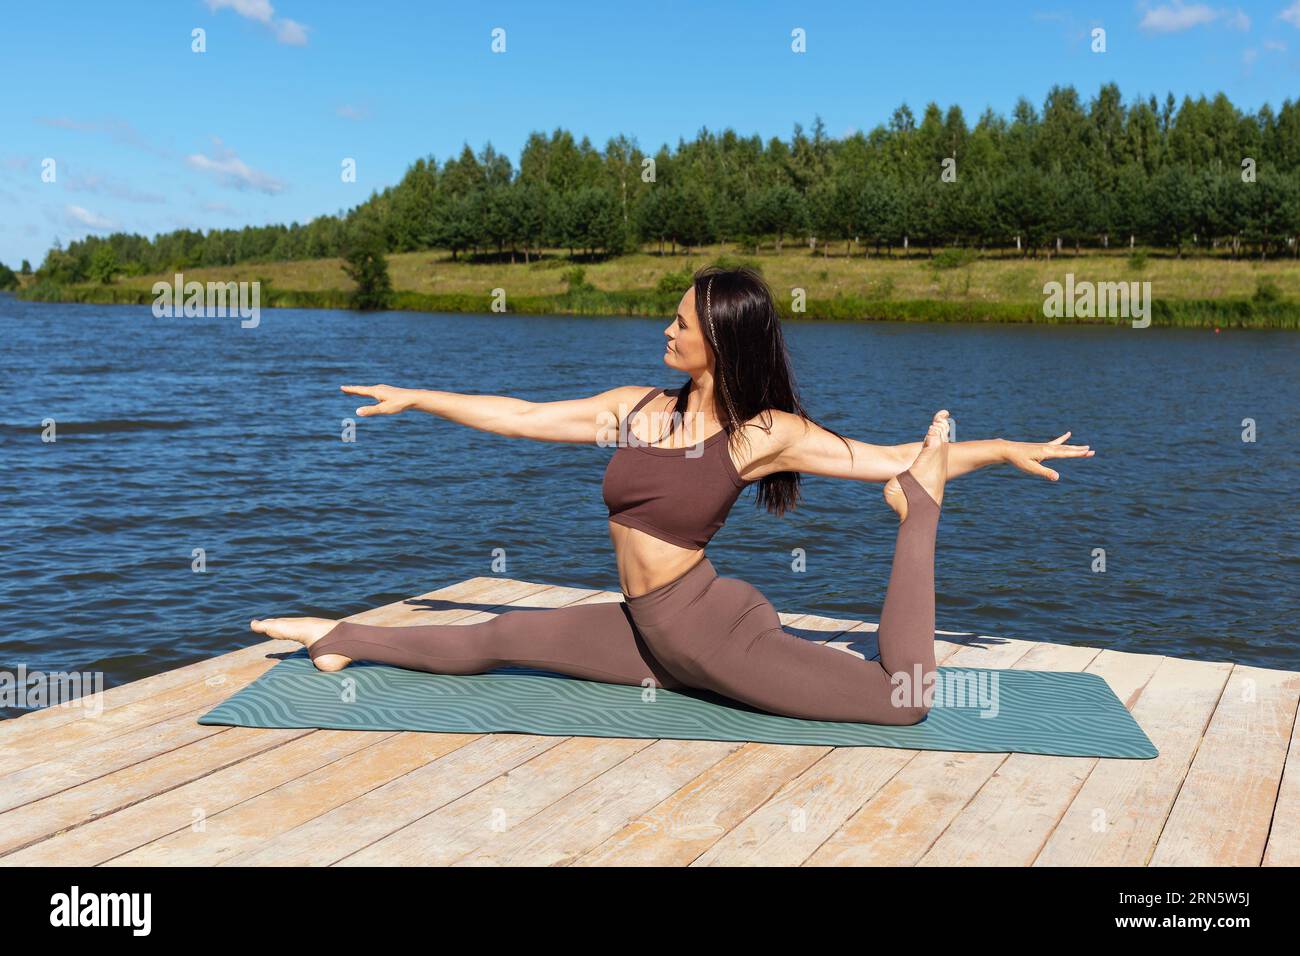 Eine Frau, die Yoga praktiziert, führt eine Variation der Hanumanasana-Übung durch, eine Längsspaltung, trainiert in separater Sportkleidung, während sie auf einer Woo sitzt Stockfoto